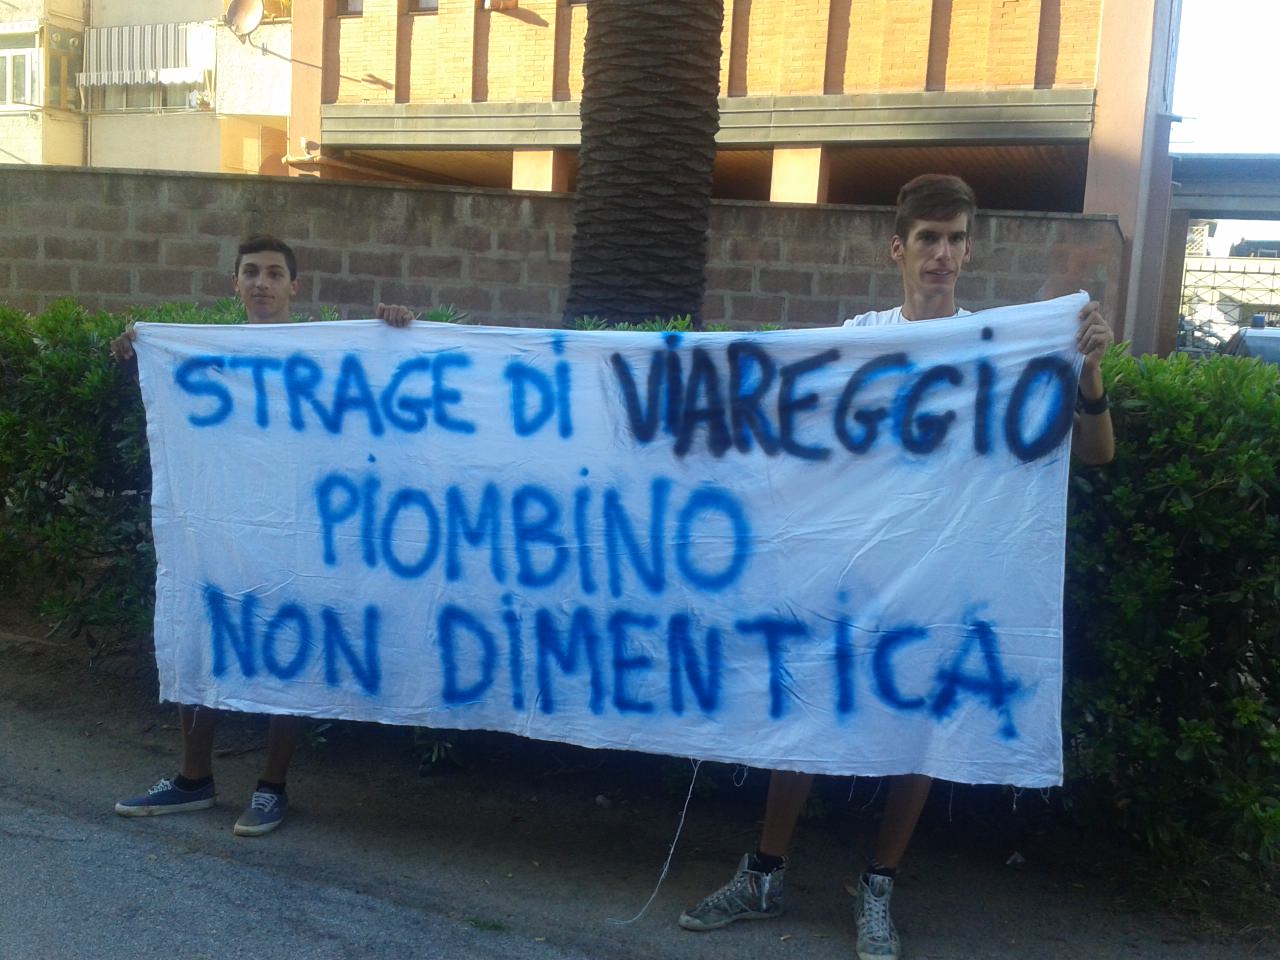 Piombino ricorda la strage di Viareggio con uno striscione